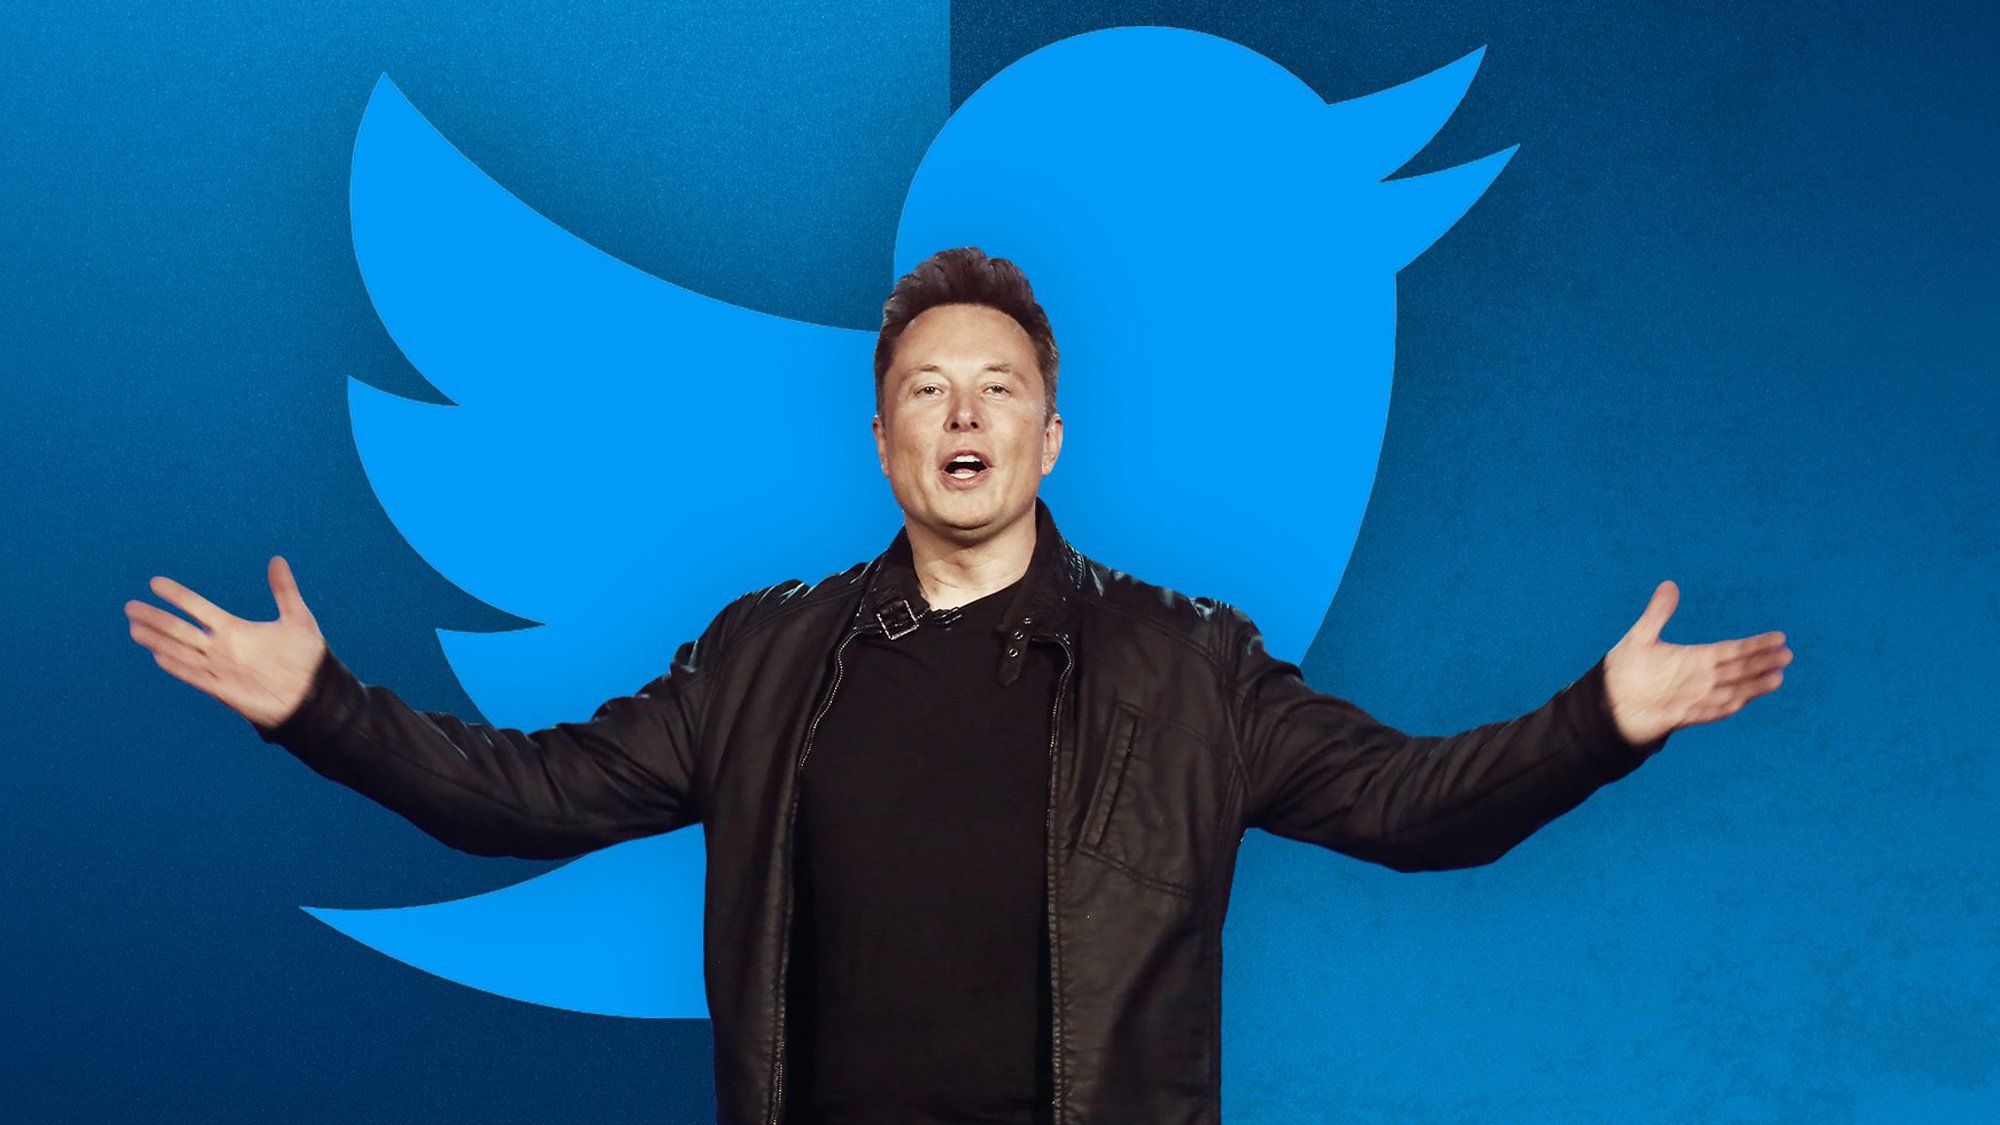 Elon Musk đang thành lập một hội đồng để tư vấn về việc dỡ bỏ bất kỳ lệnh cấm nào trên Twitter. Ảnh: @AFP.